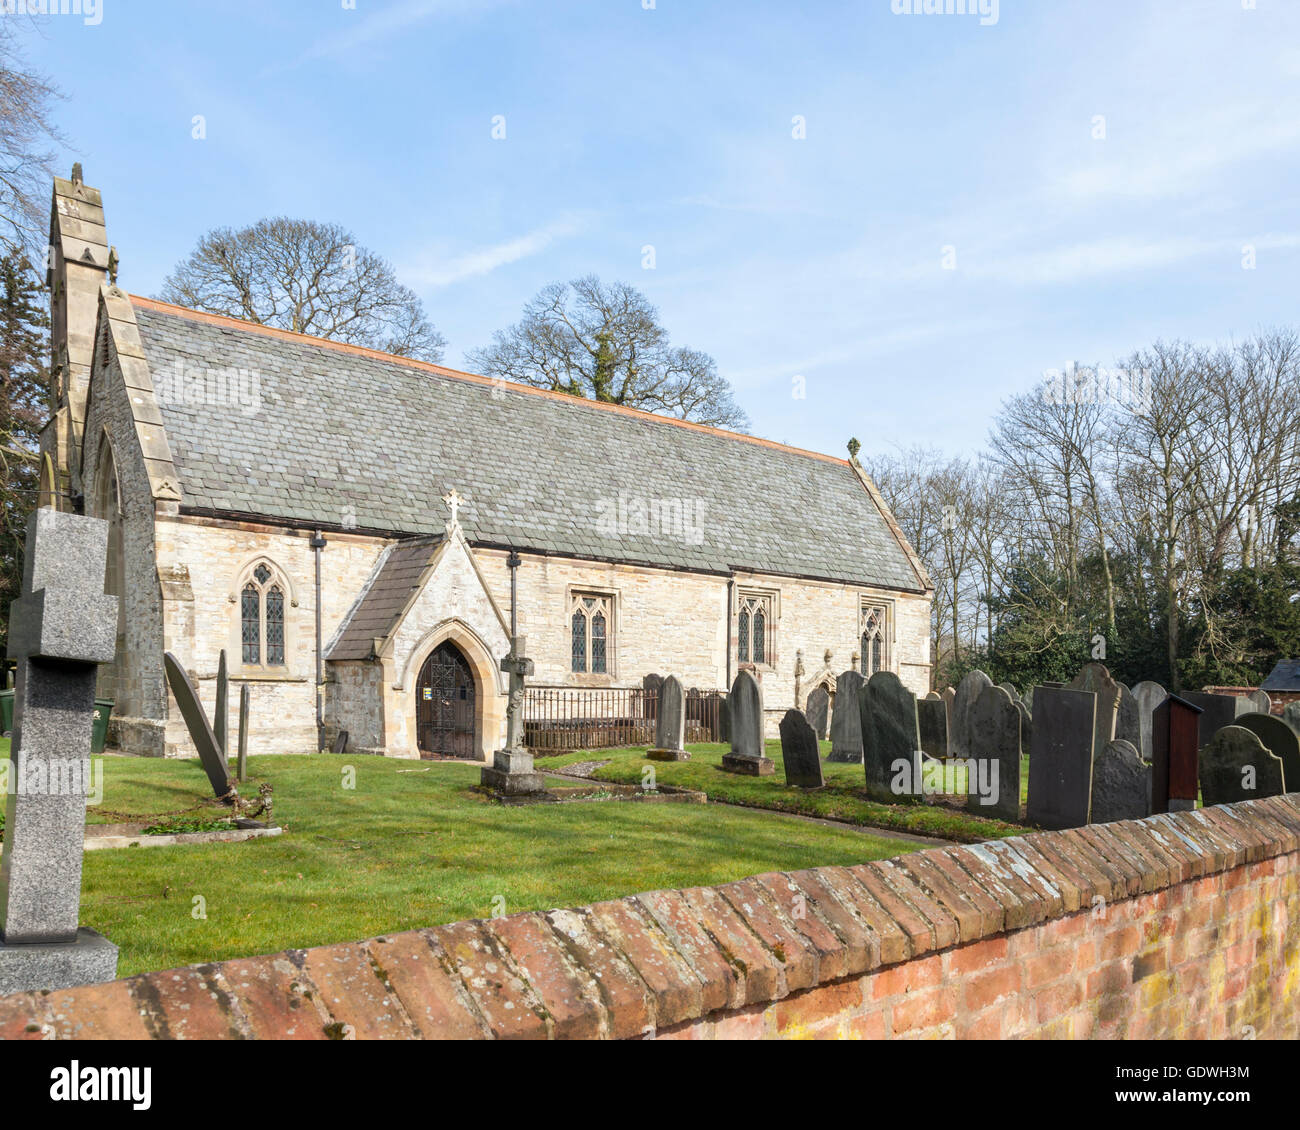 St Giles' Kirche Costock, einem denkmalgeschützten mittelalterlichen Kirche von besonderen architektonischen und historischen Interesse, Nottinghamshire, England, Großbritannien Stockfoto